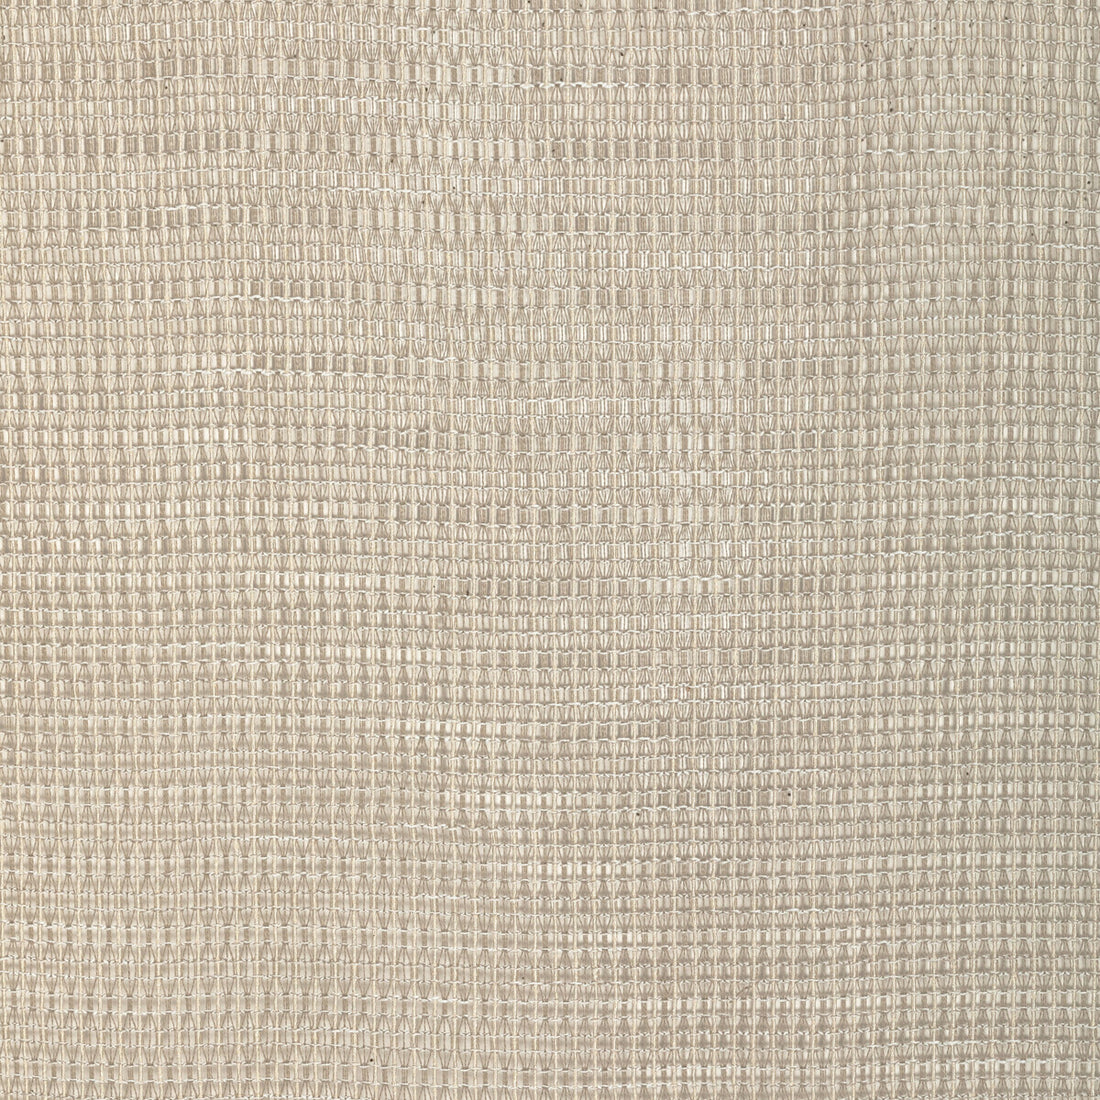 Kravet Design fabric in 4927-16 color - pattern 4927.16.0 - by Kravet Design